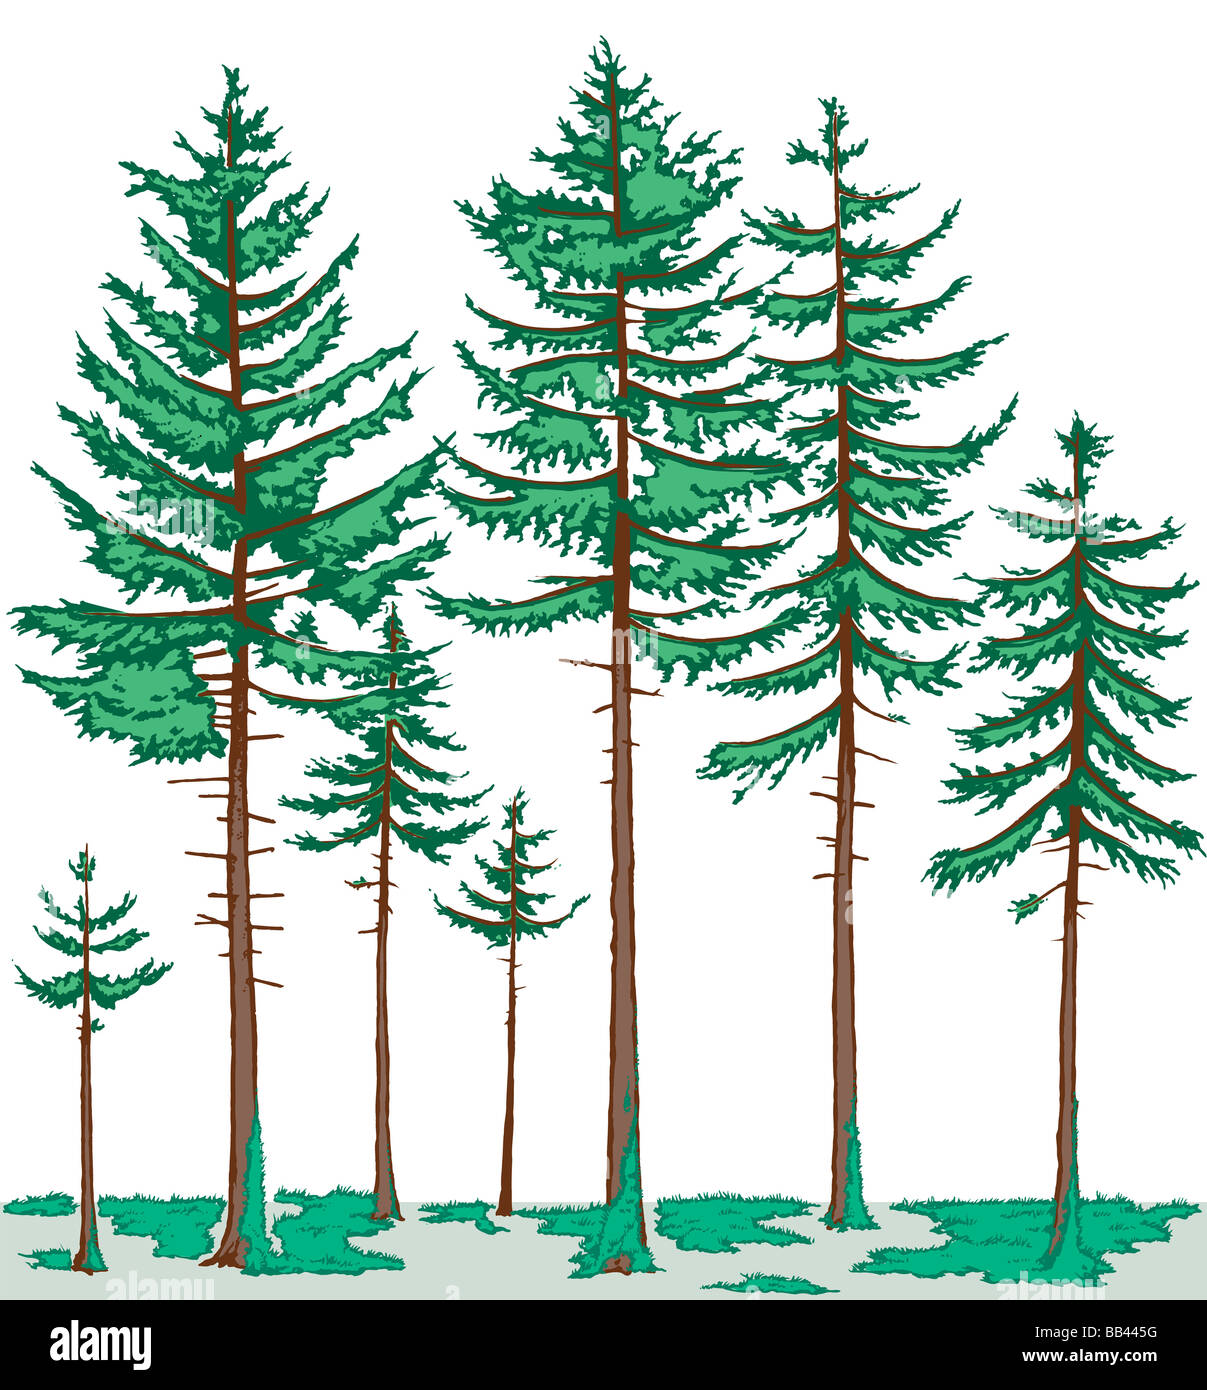 Vegetation-Profil des borealen Waldes. Die Baumschicht besteht hauptsächlich aus Nadelbäumen, und Moose sind die vorherrschenden Bodendecker. Stockfoto